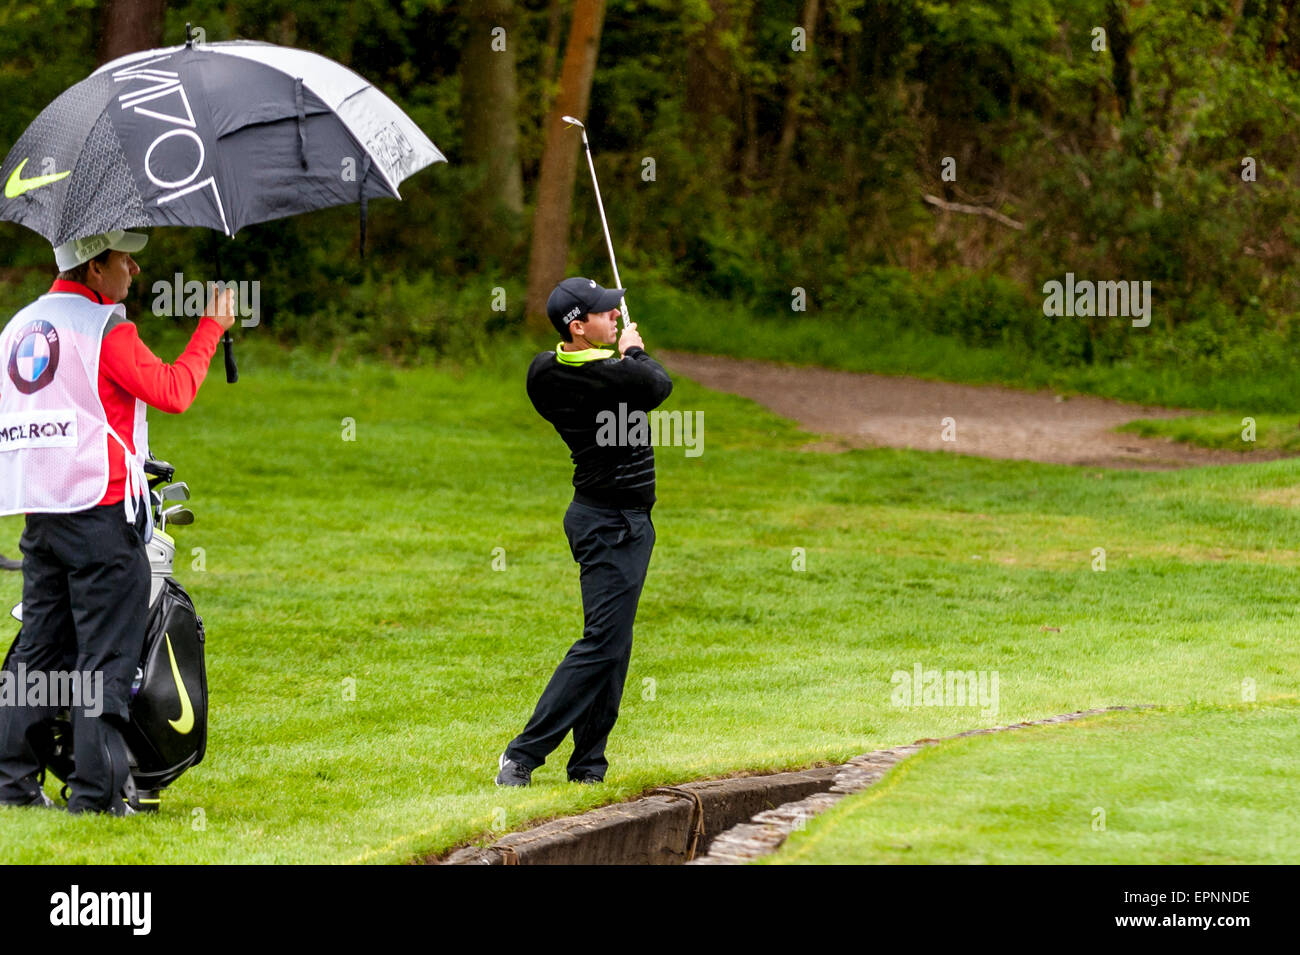 London, UK. 20. Mai 2015. Rory McIlroy, aktuelle Nummer eins Golfer der Welt, trifft ein Schuss in die BMW PGA Championship 2015 pro-am im Wentworth Club, Surrey. Bildnachweis: Stephen Chung / Alamy Live News Stockfoto